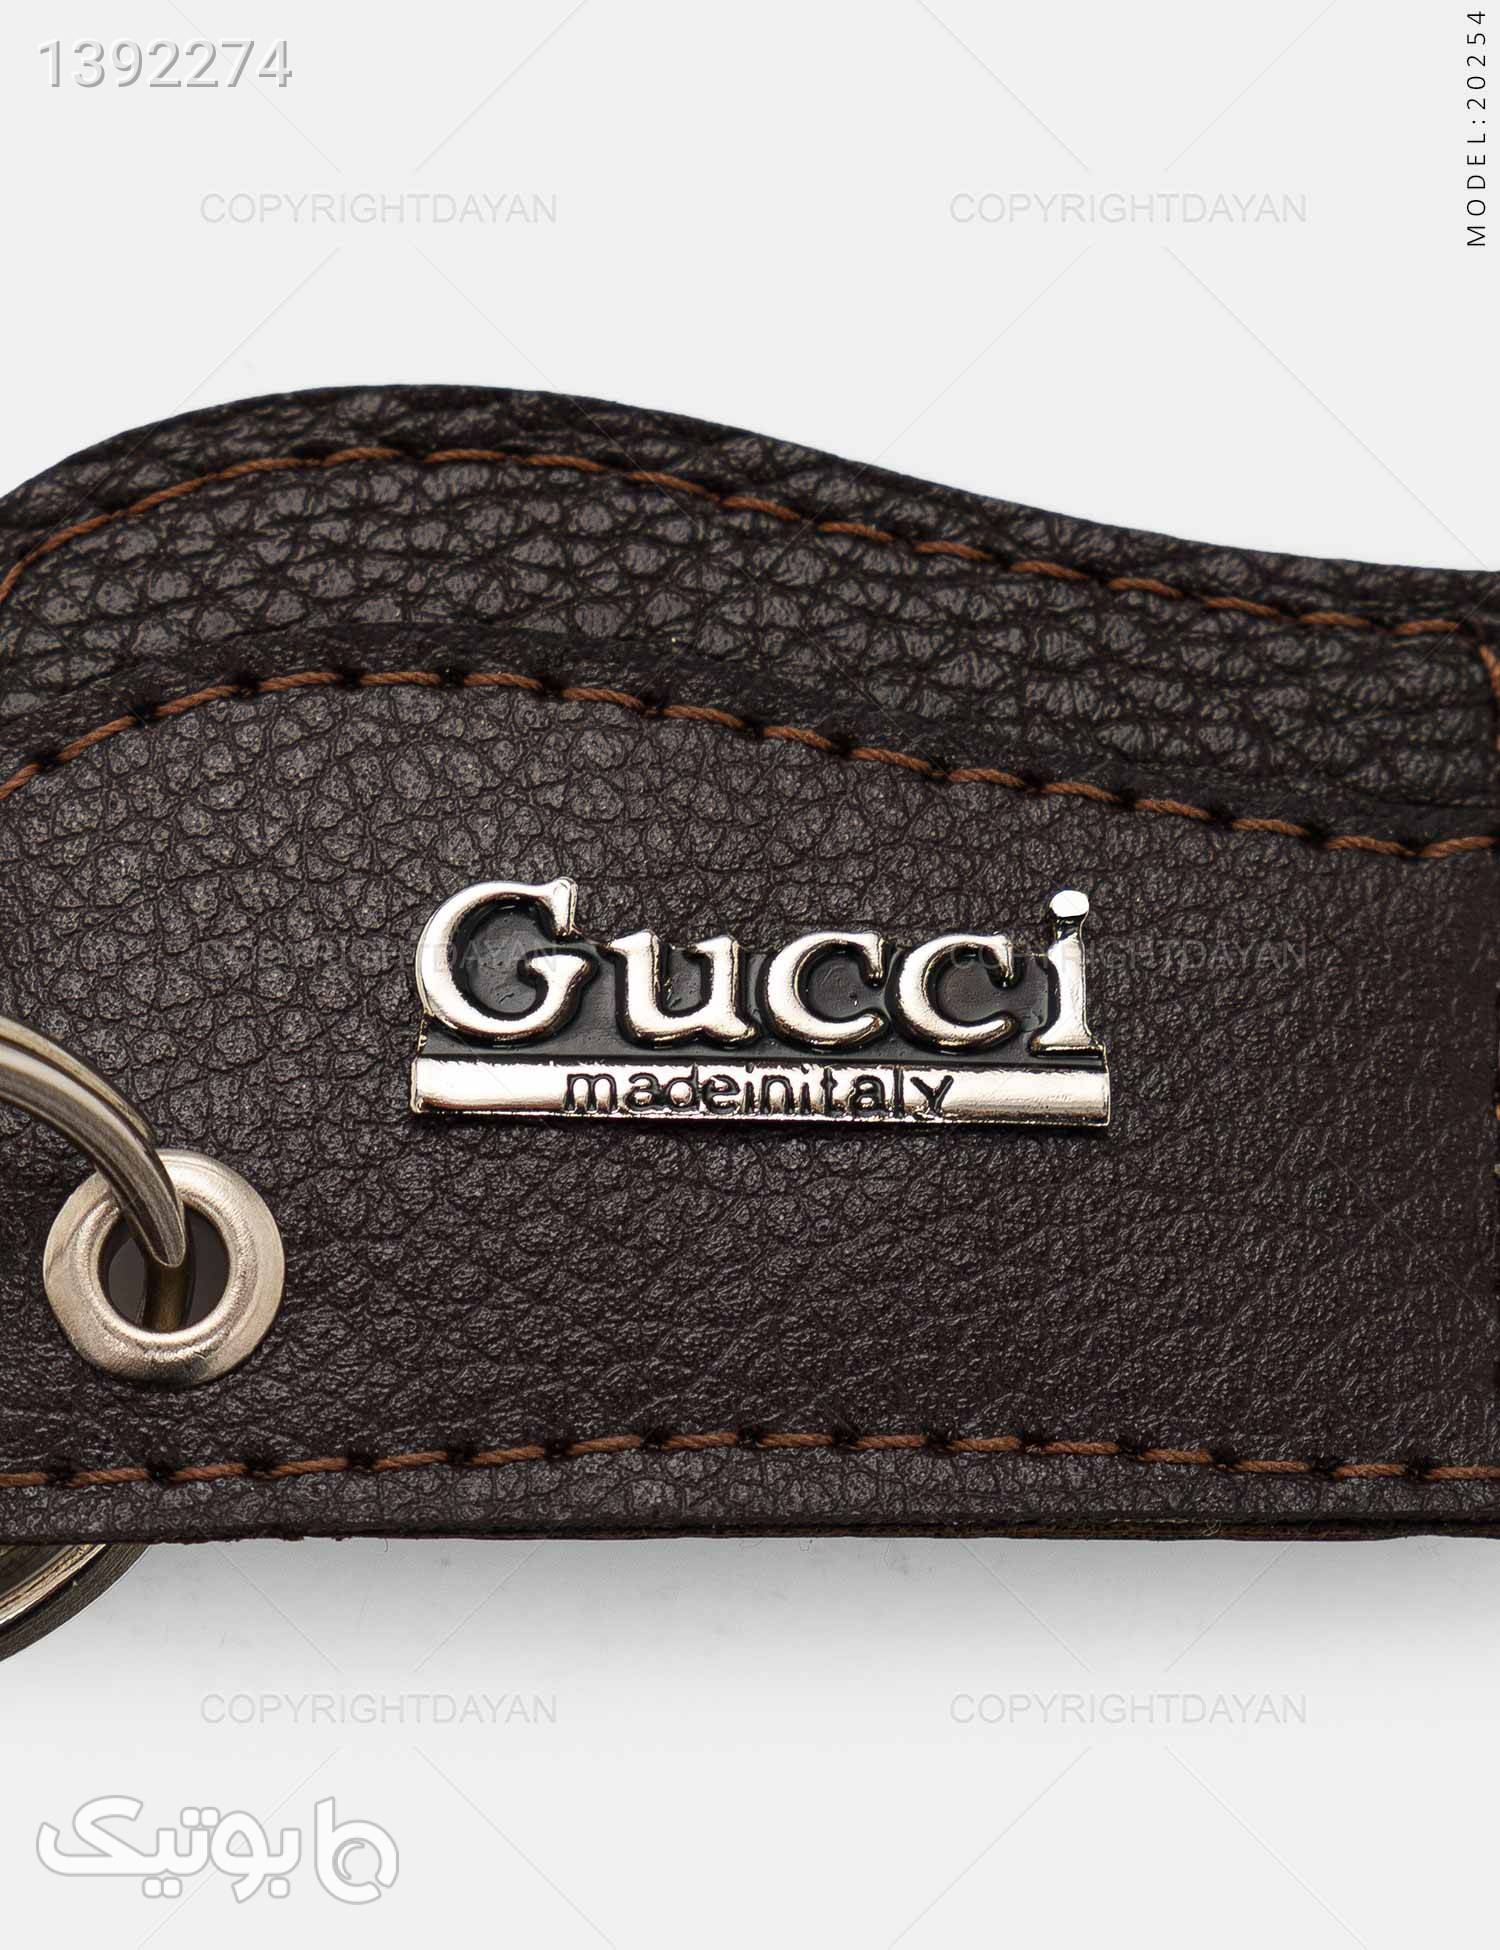 ست چرمی Gucci مدل 20254